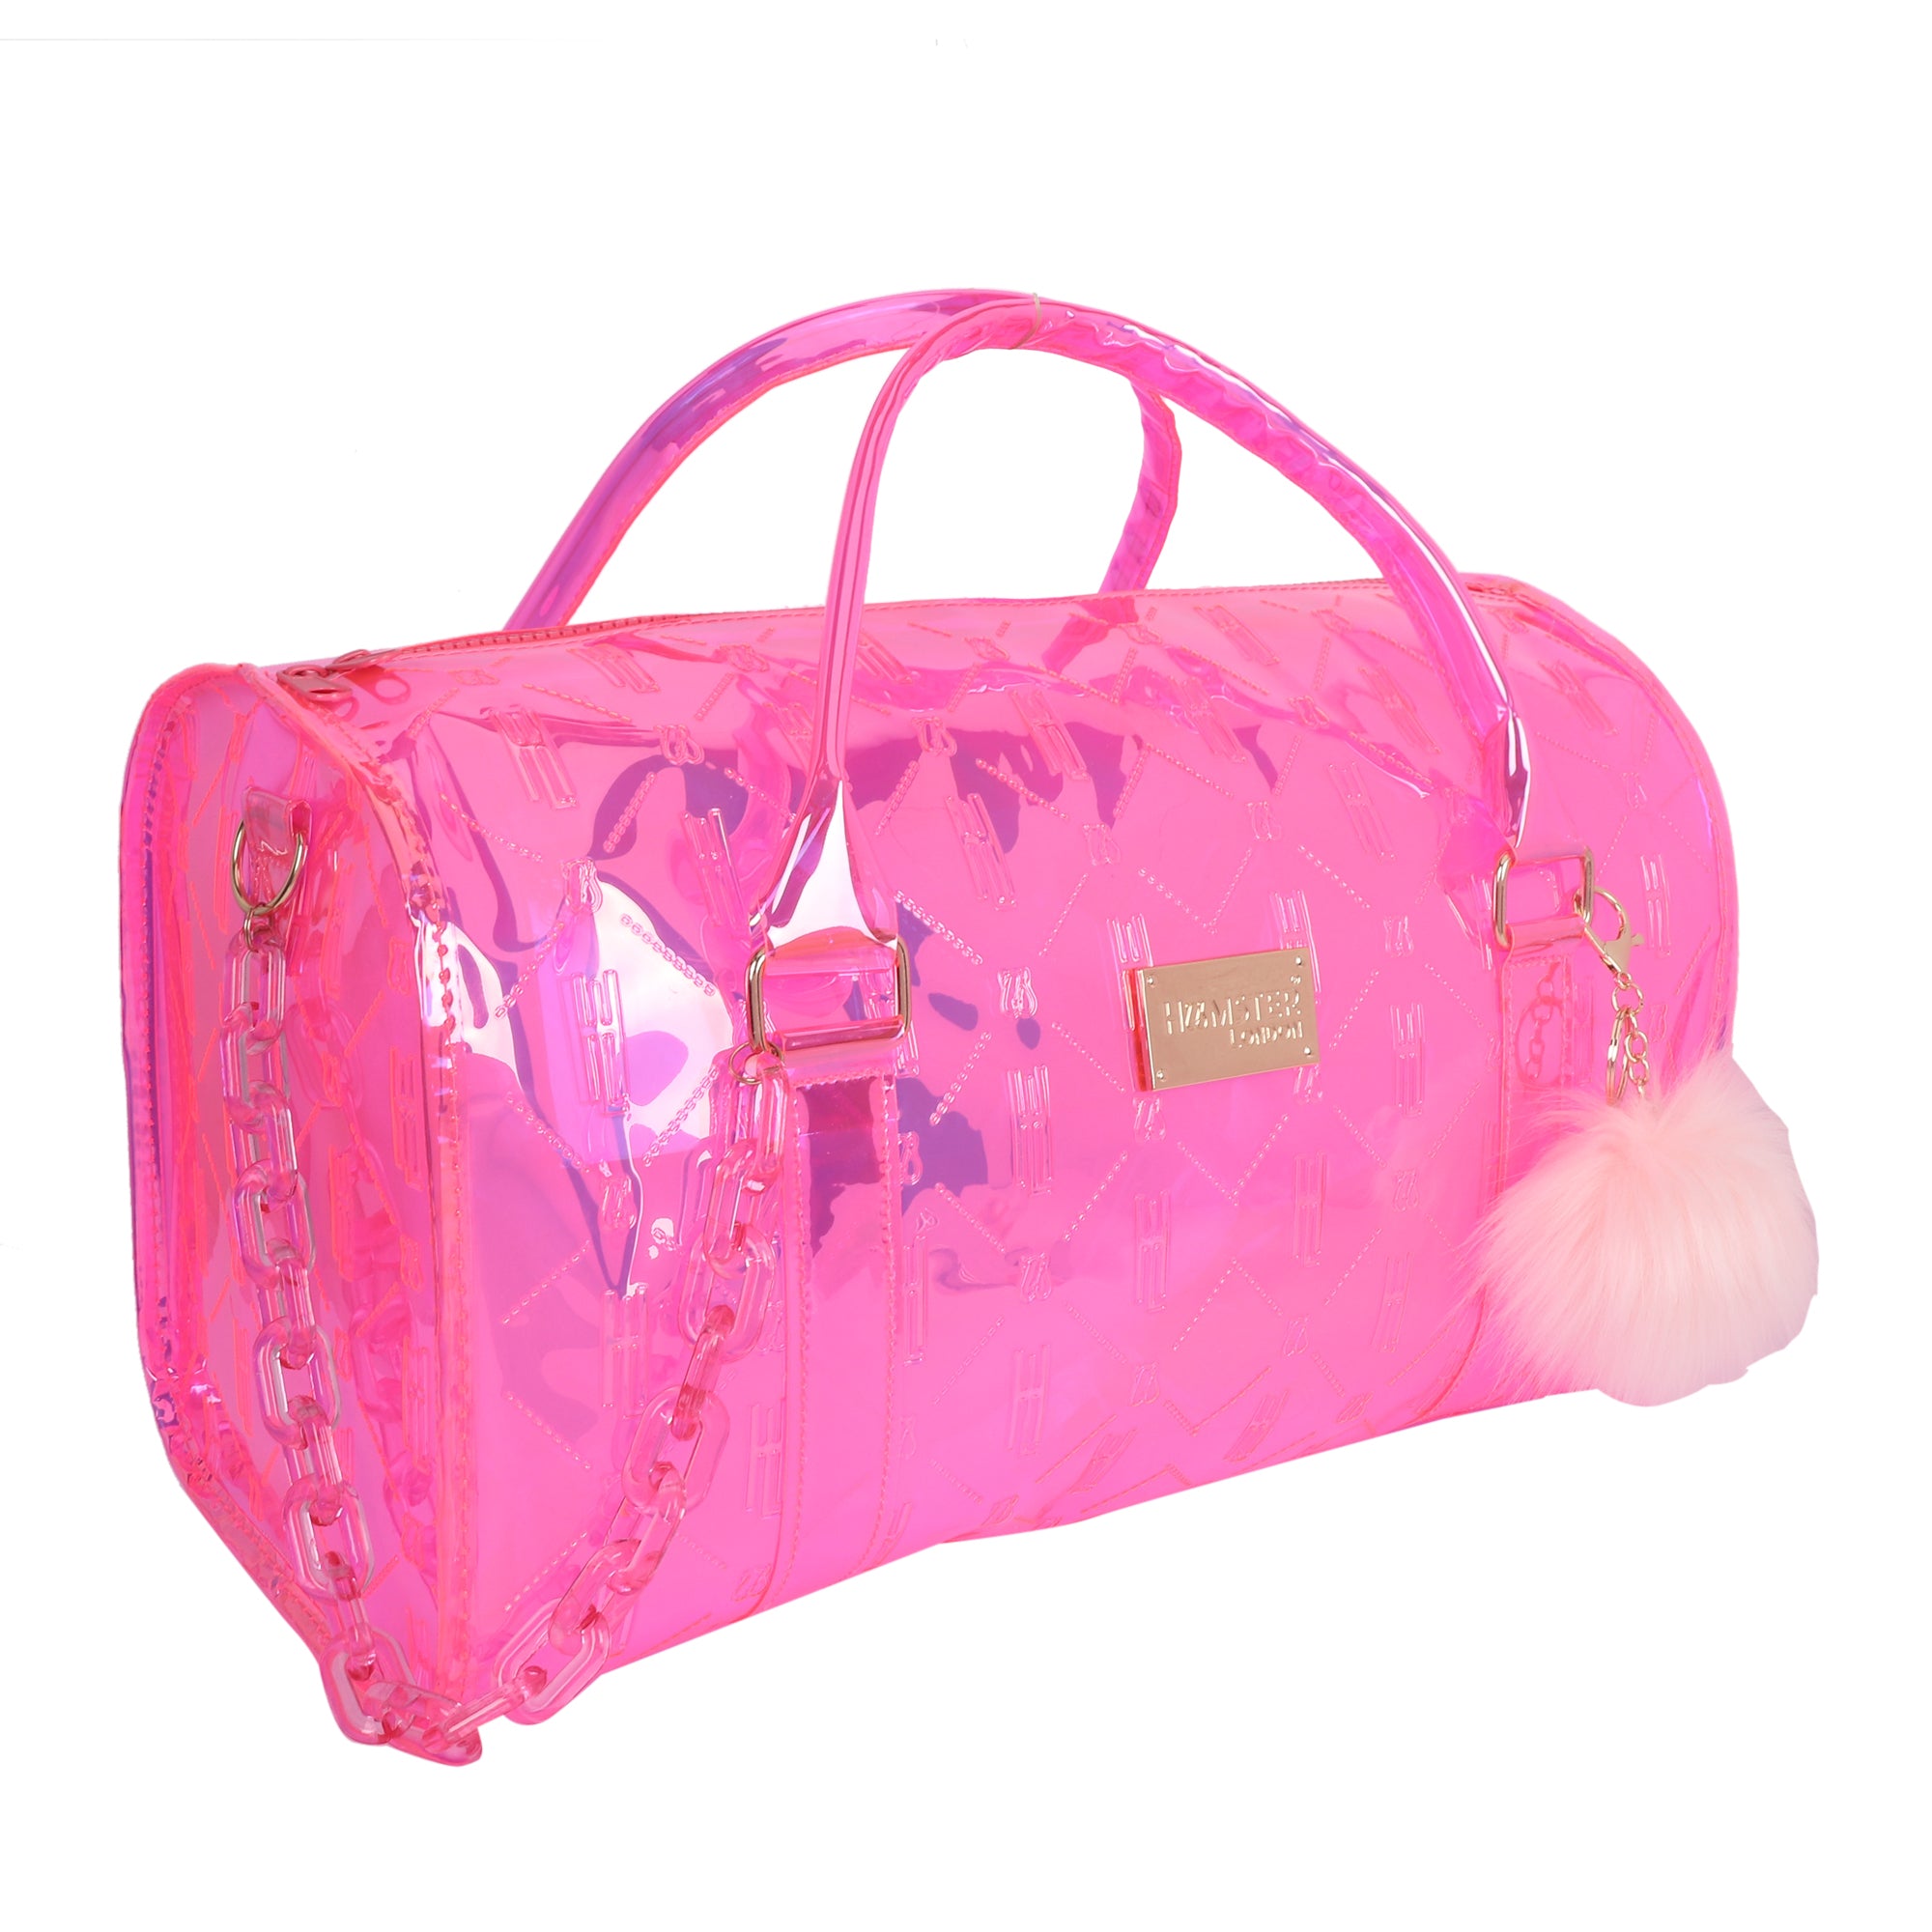 HL Raver Duffle Bag Pink Large